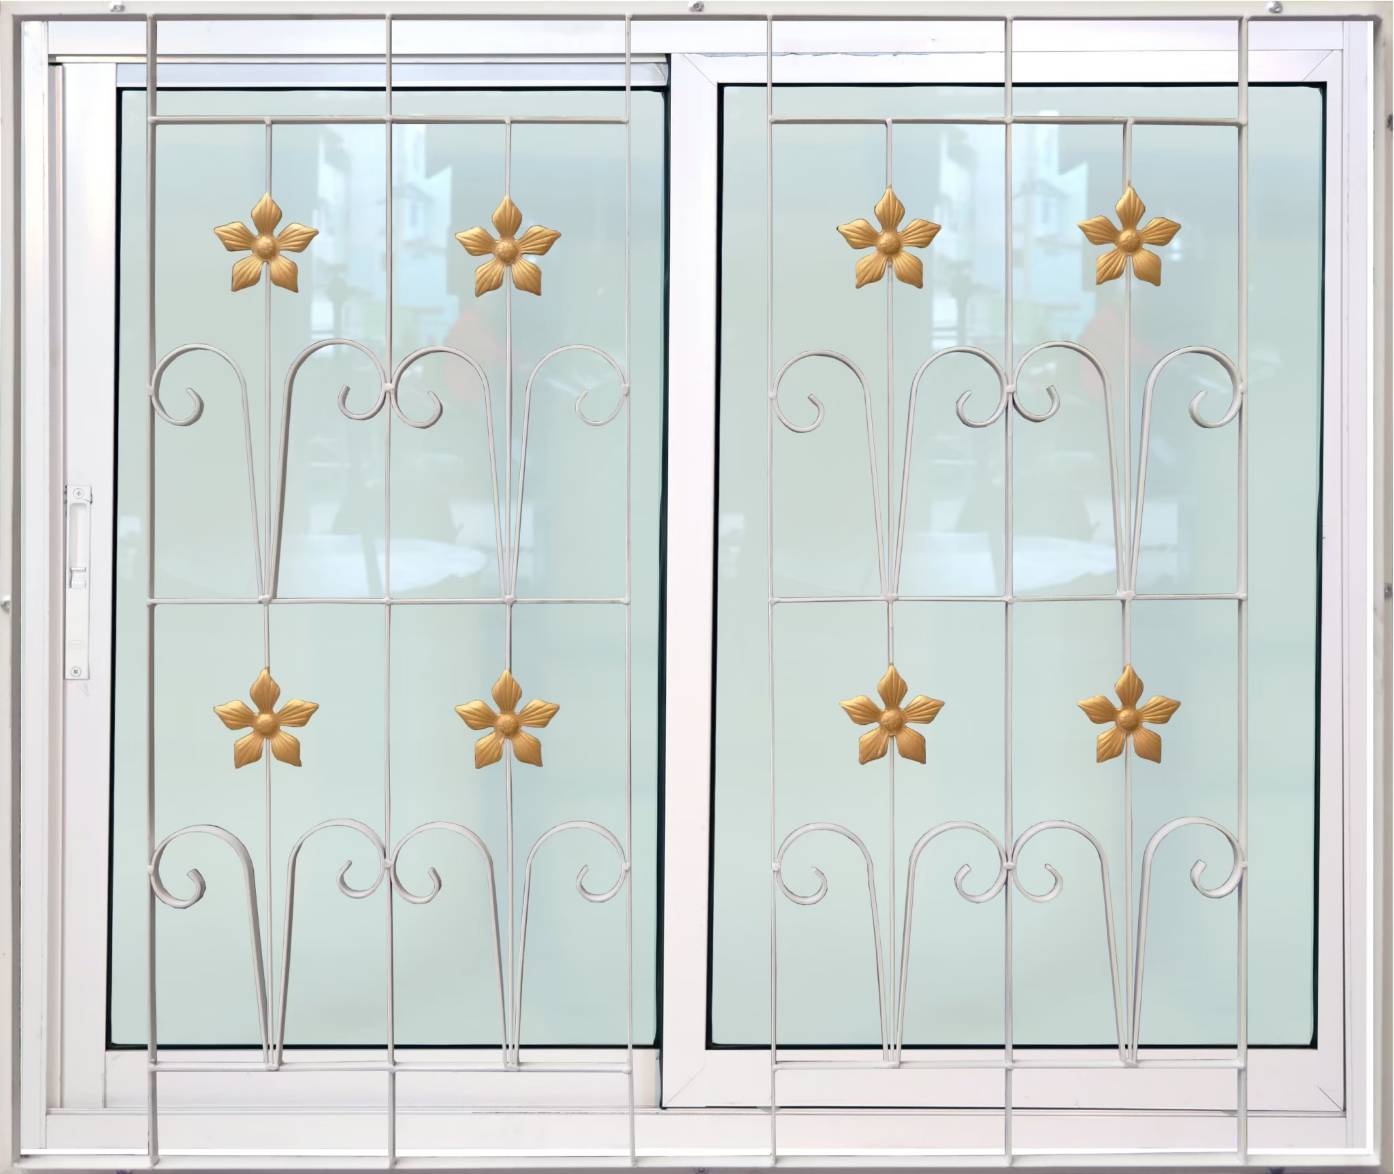 หน้าต่างบานเลื่อนเหล็กดัดลายดอกไม้ 2ช่อง อลูมิเนียมสีอบขาว+กระจกใสเขียว+มุ้ง+เหล็กดัด 120ซม.*110ซม.